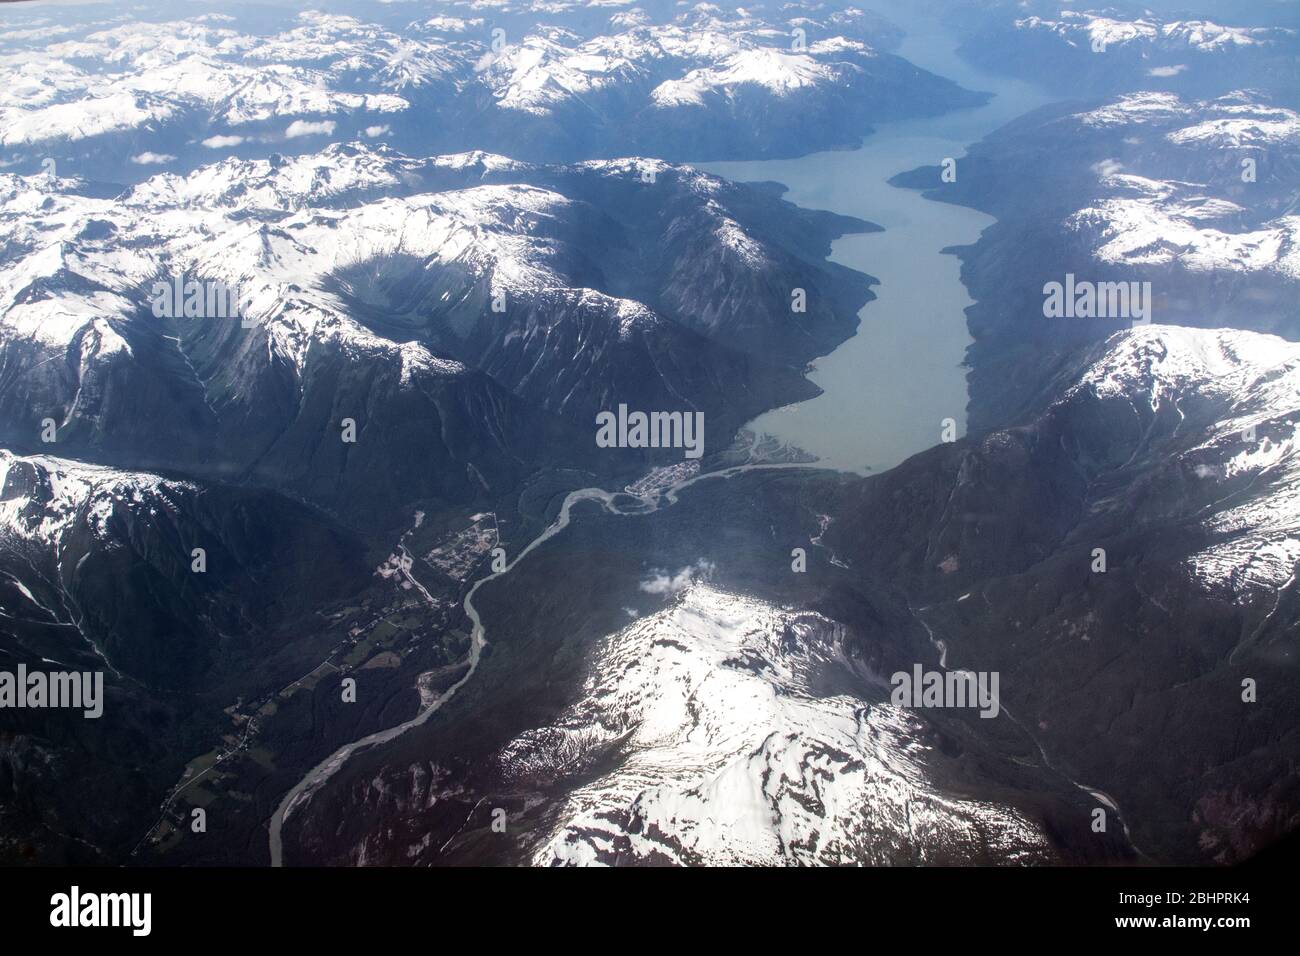 Vue aérienne de la rivière Bella Coola inférieure et de la vallée et de l'océan Pacifique, dans la forêt pluviale de Great Bear, côte de la Colombie-Britannique, Canada. Banque D'Images